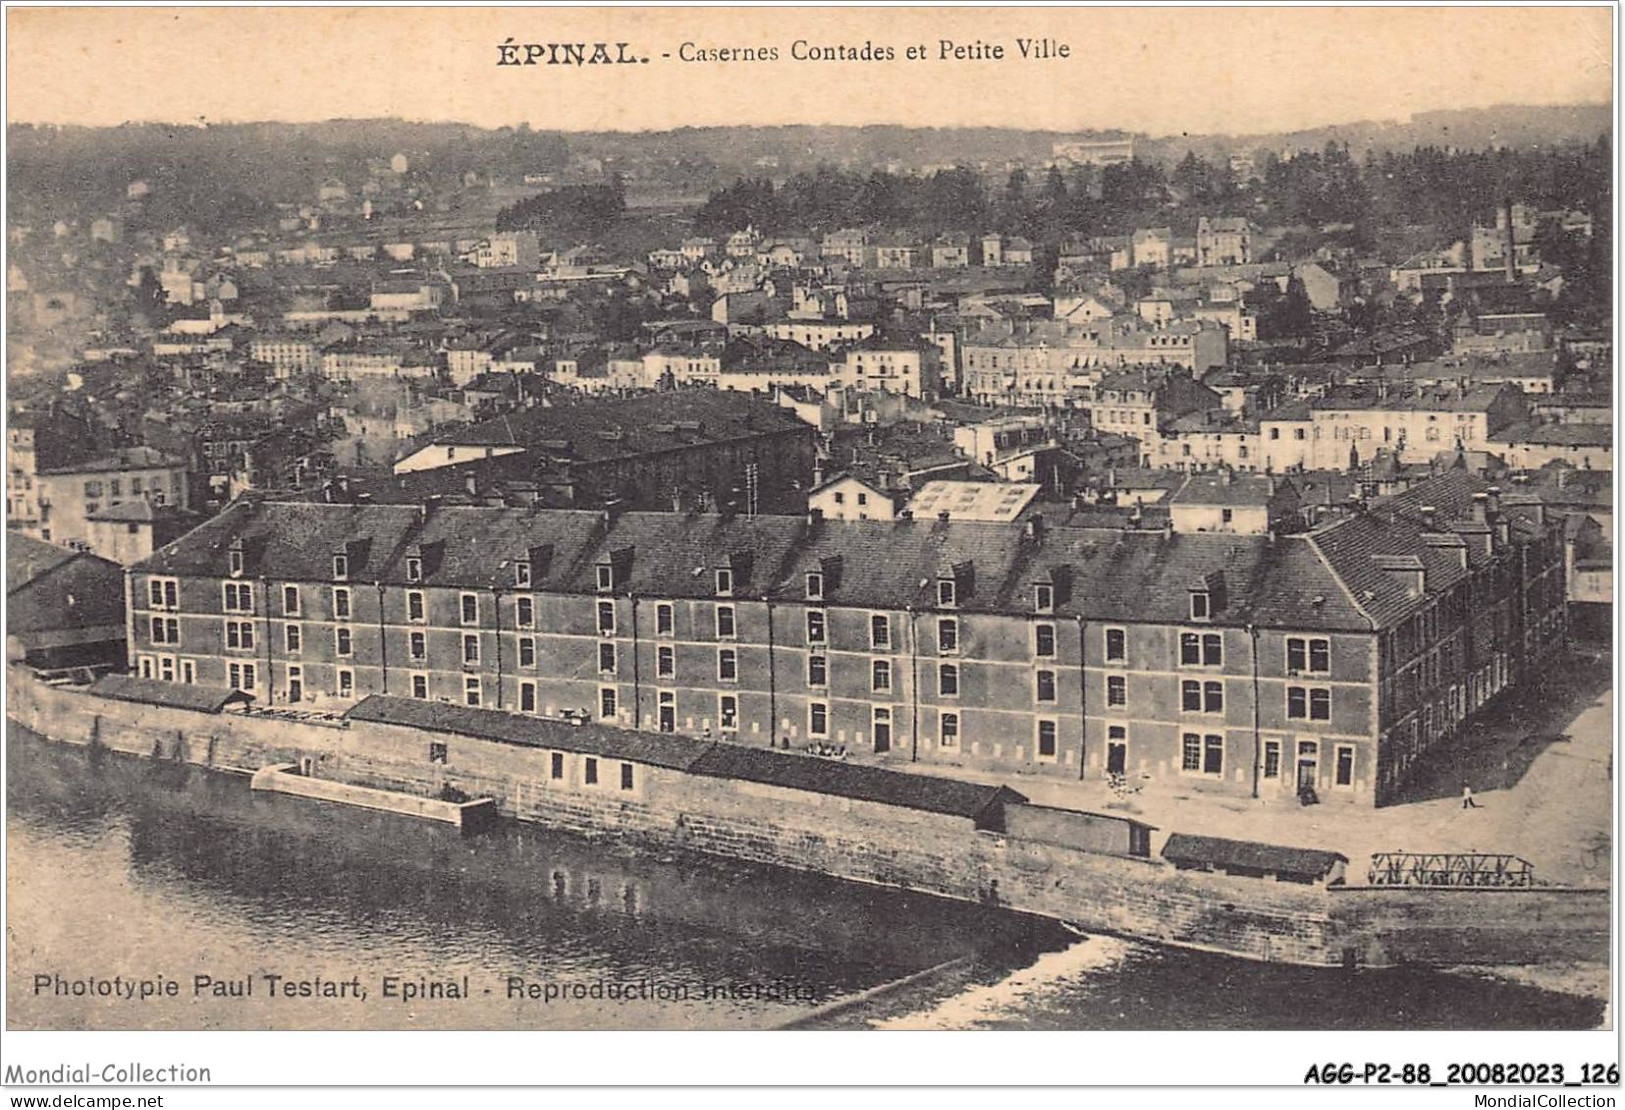 AGGP2-88-0145 -  EPINAL - Casernes Contades Et Petite Ville - Epinal